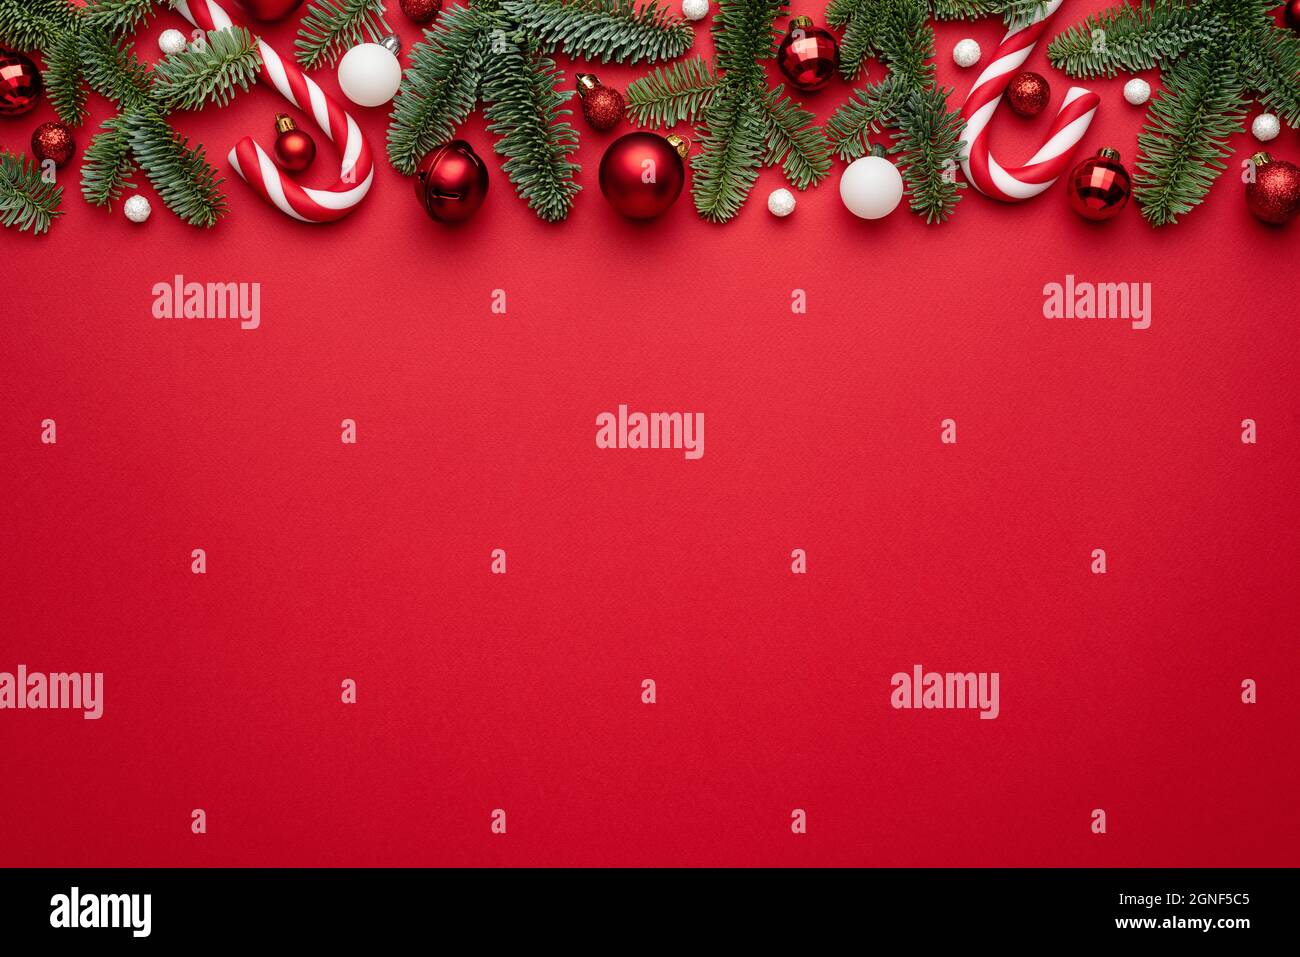 Fond rouge avec décorations de Noël en branches de sapin et boules de Noël. Vide avec un espace de copie pour le texte Banque D'Images